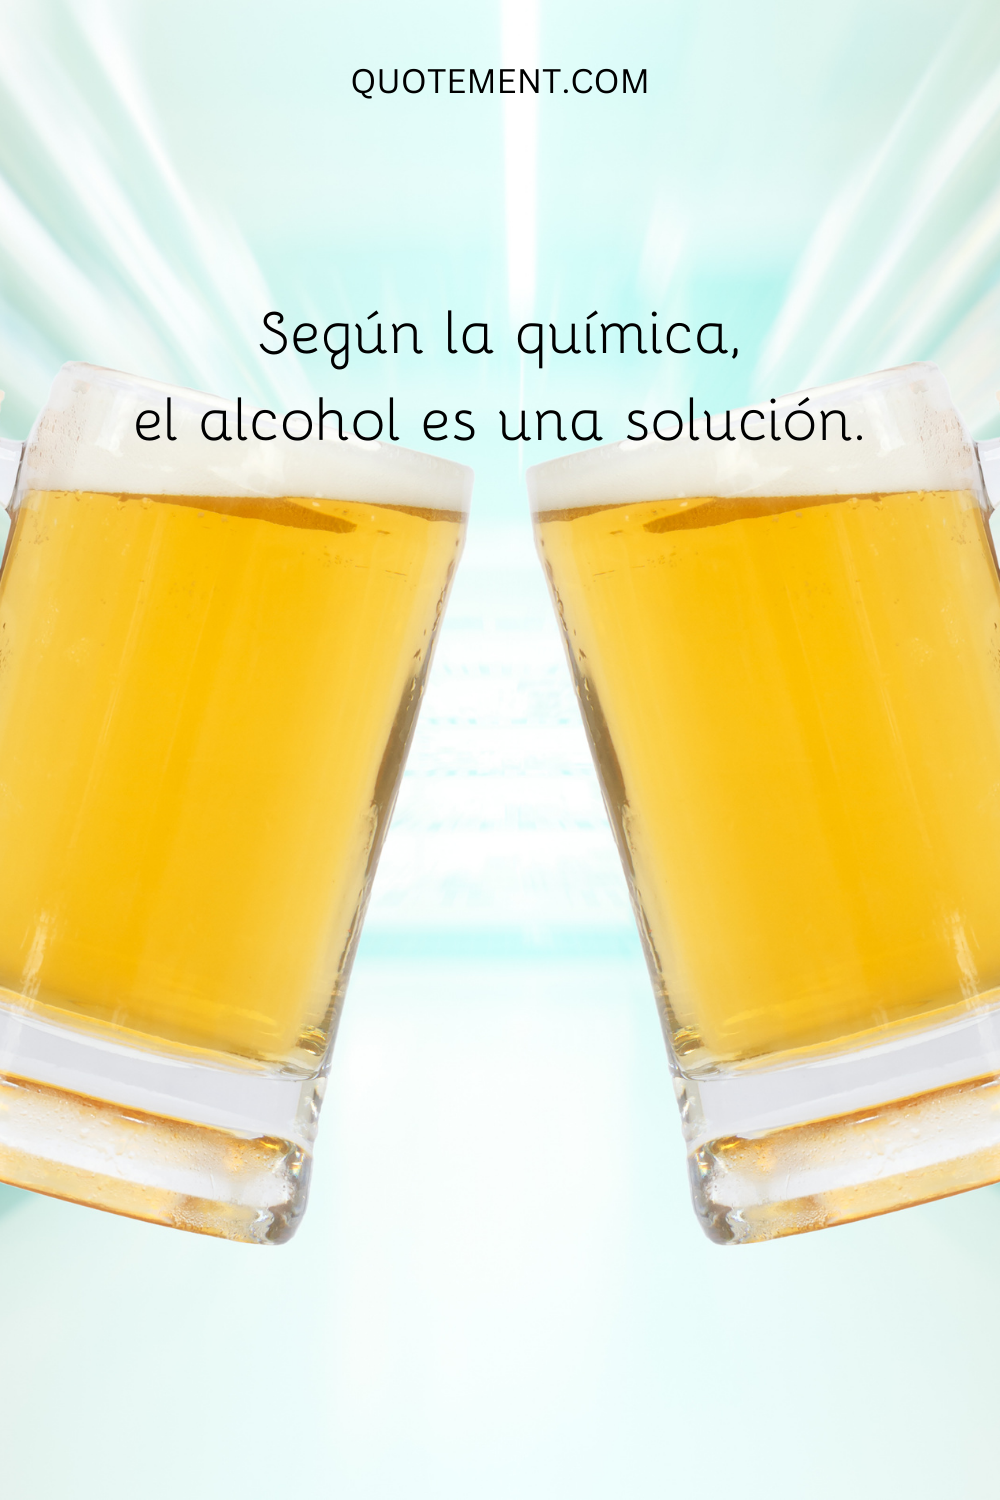 Según la química, el alcohol es una solución.